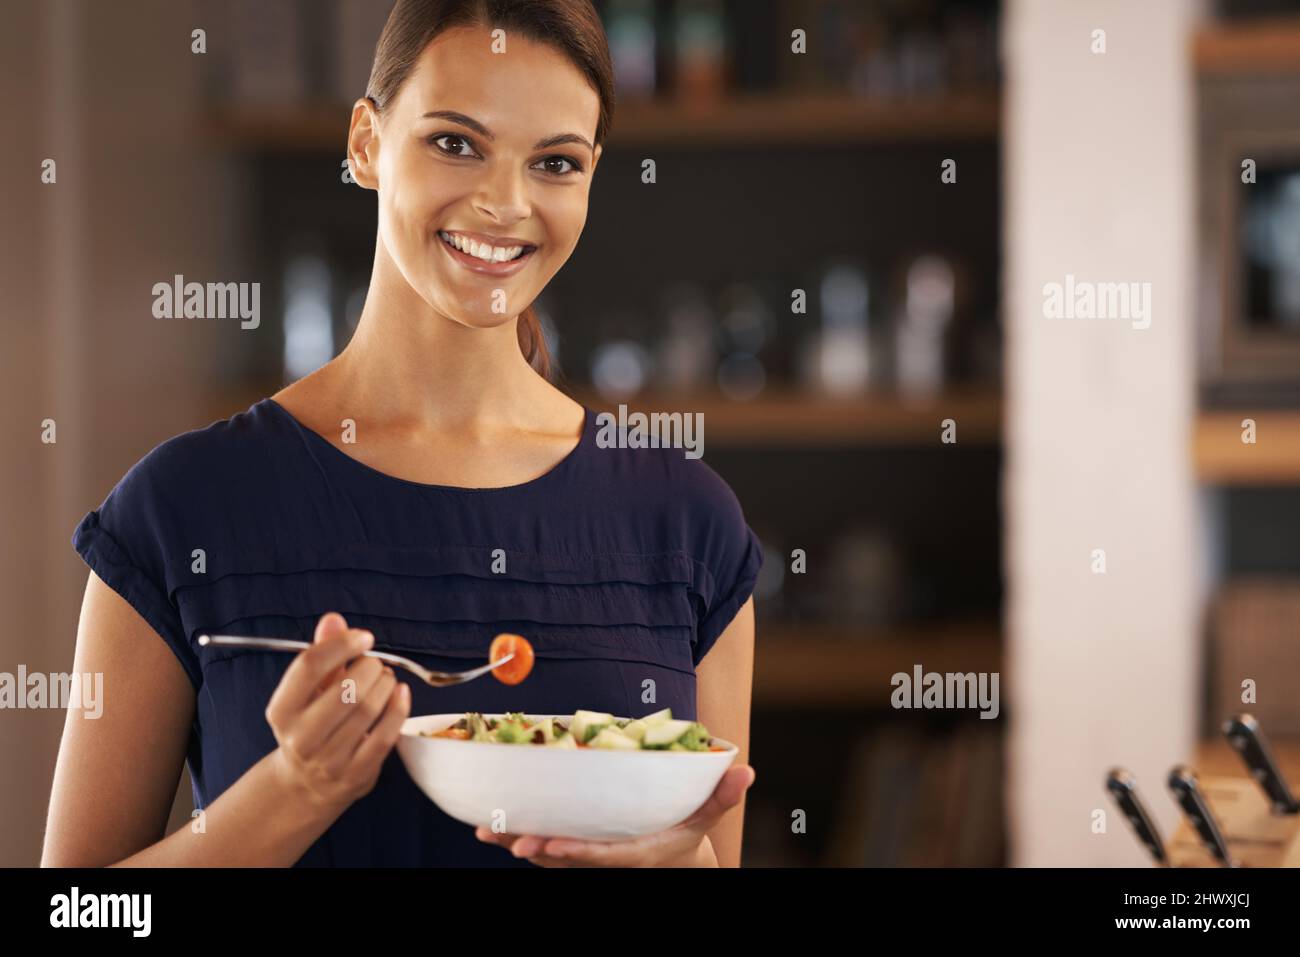 Was ich esse, ist wer ich bin. Eine schöne junge Frau, die zu Hause eine Schüssel Salat isst. Stockfoto